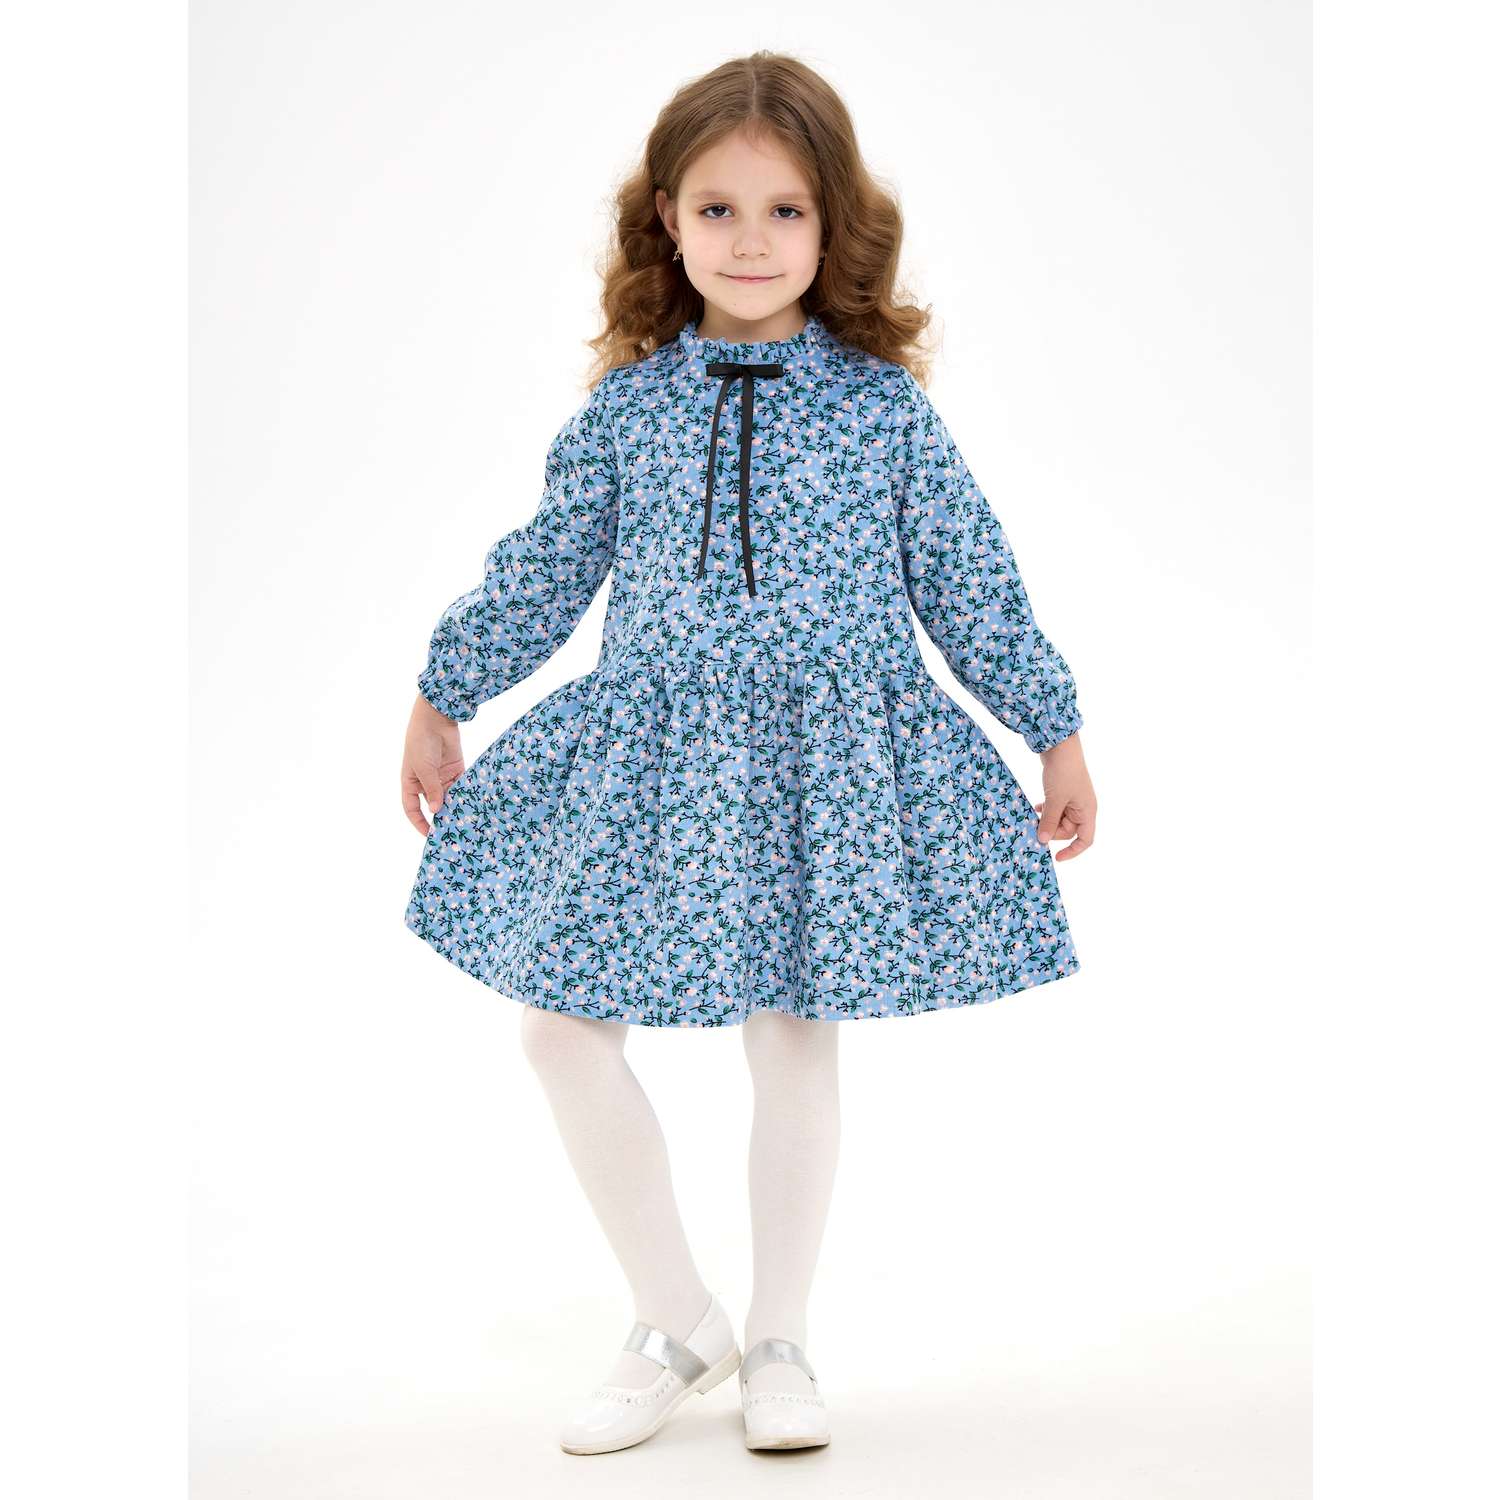 Платье CHILDREAM платье из микровельвета голубое - фото 1